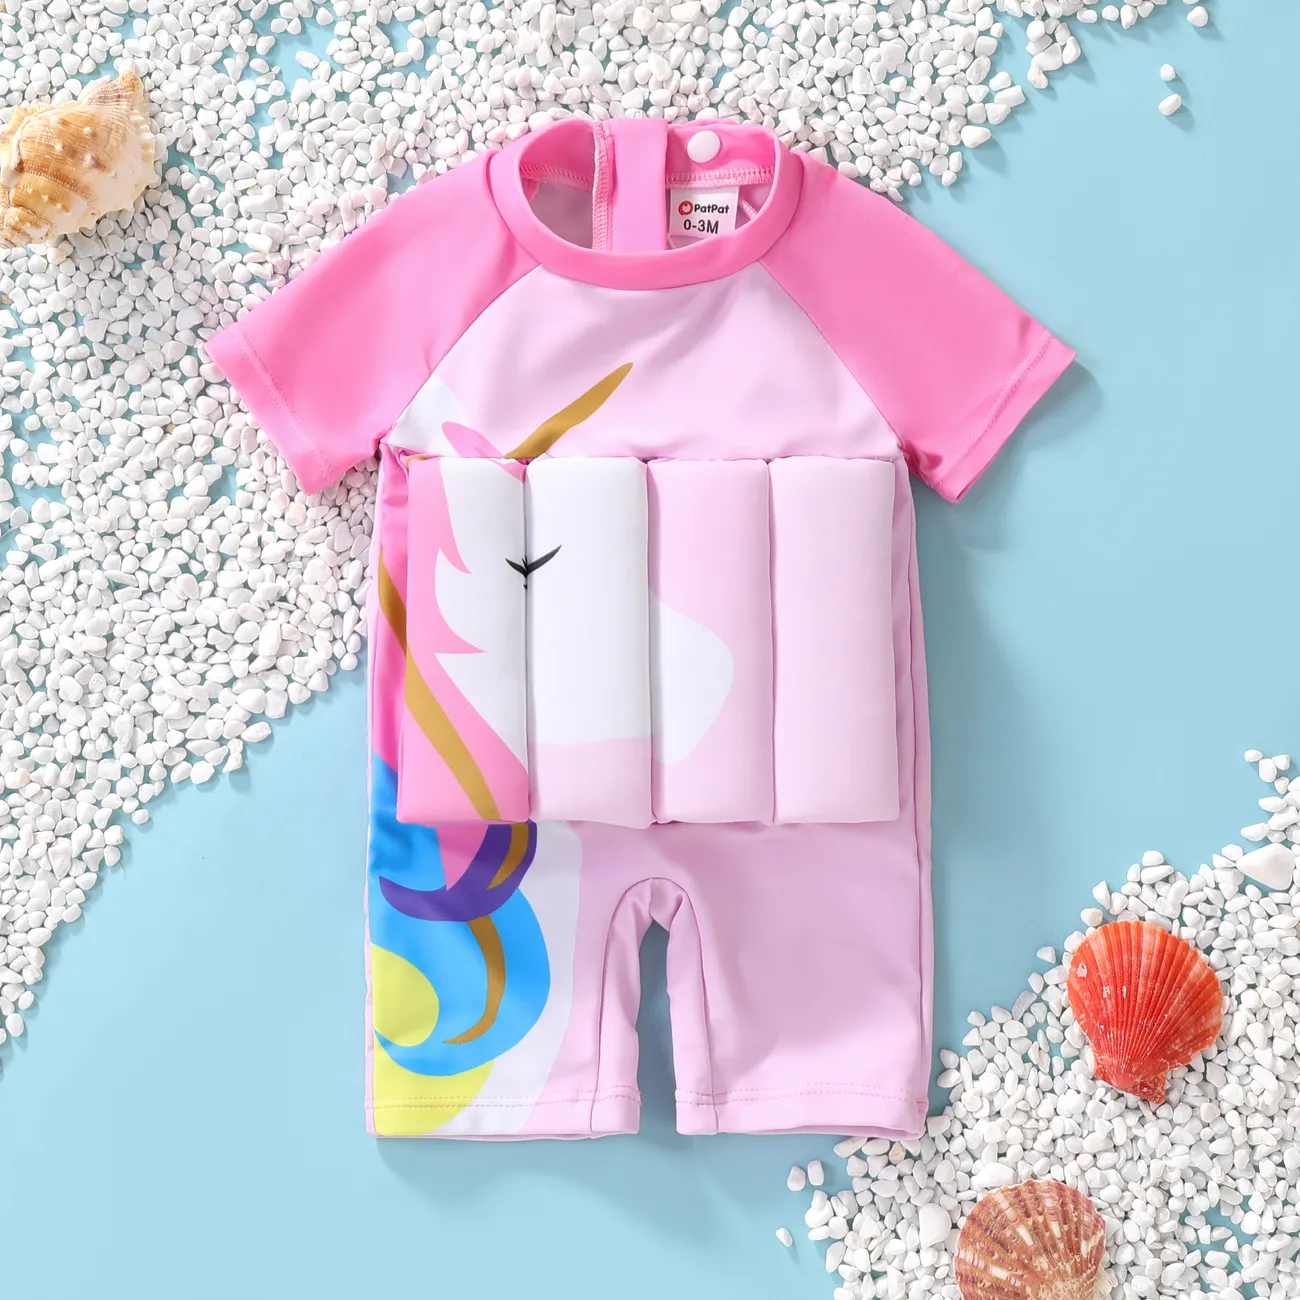 Neonato Ragazza Cuciture in tessuto Unicorno Infantile Manica corta Costumi da bagno Rosa big image 1